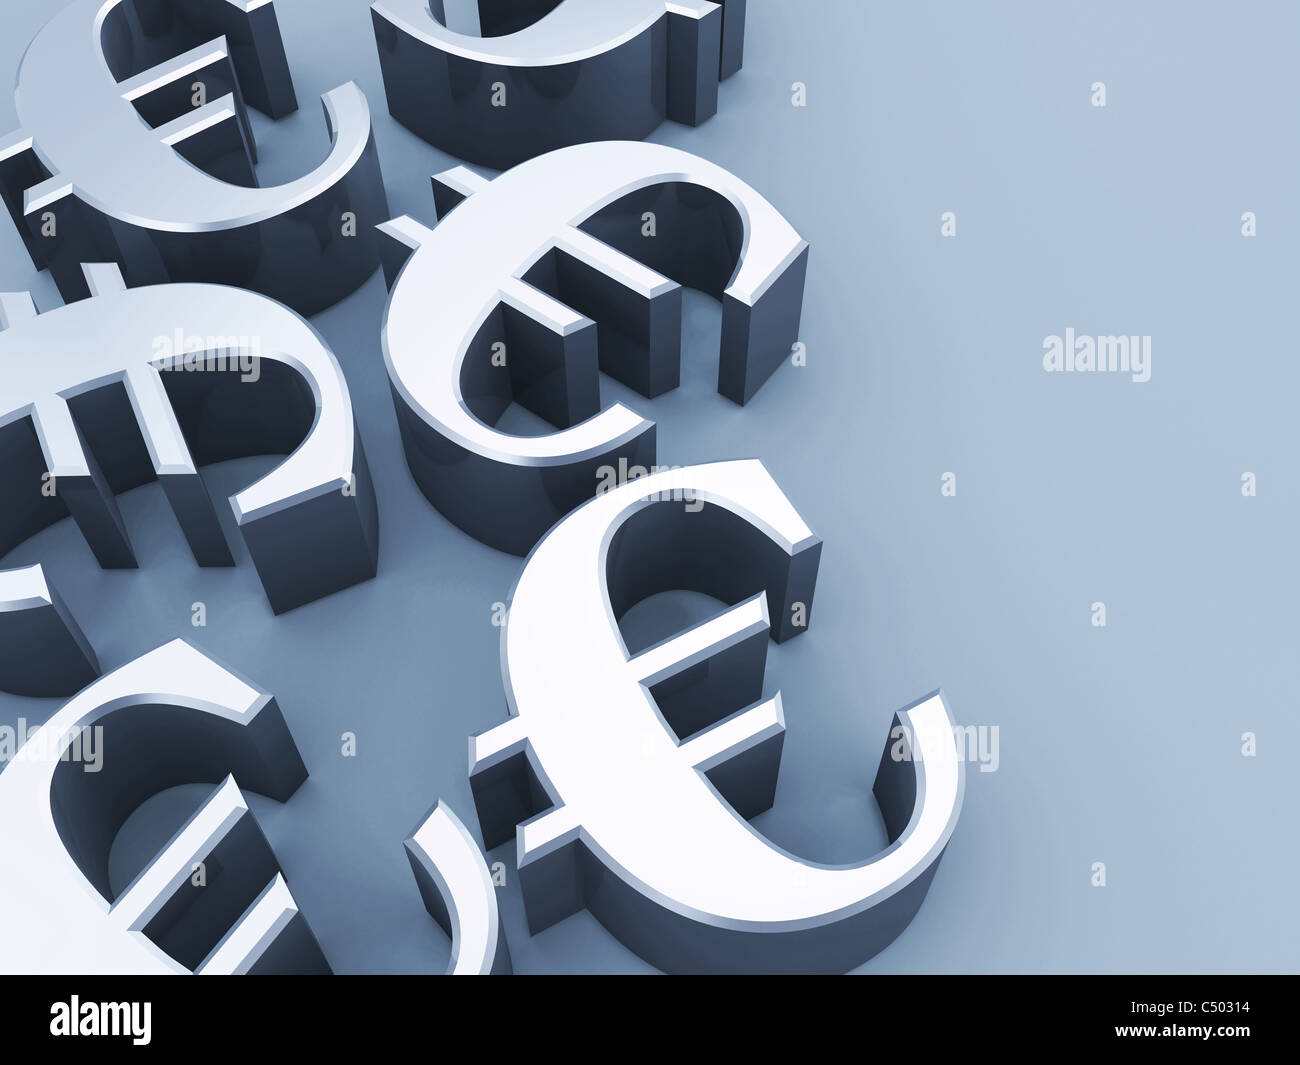 Euro sign Stock Photo